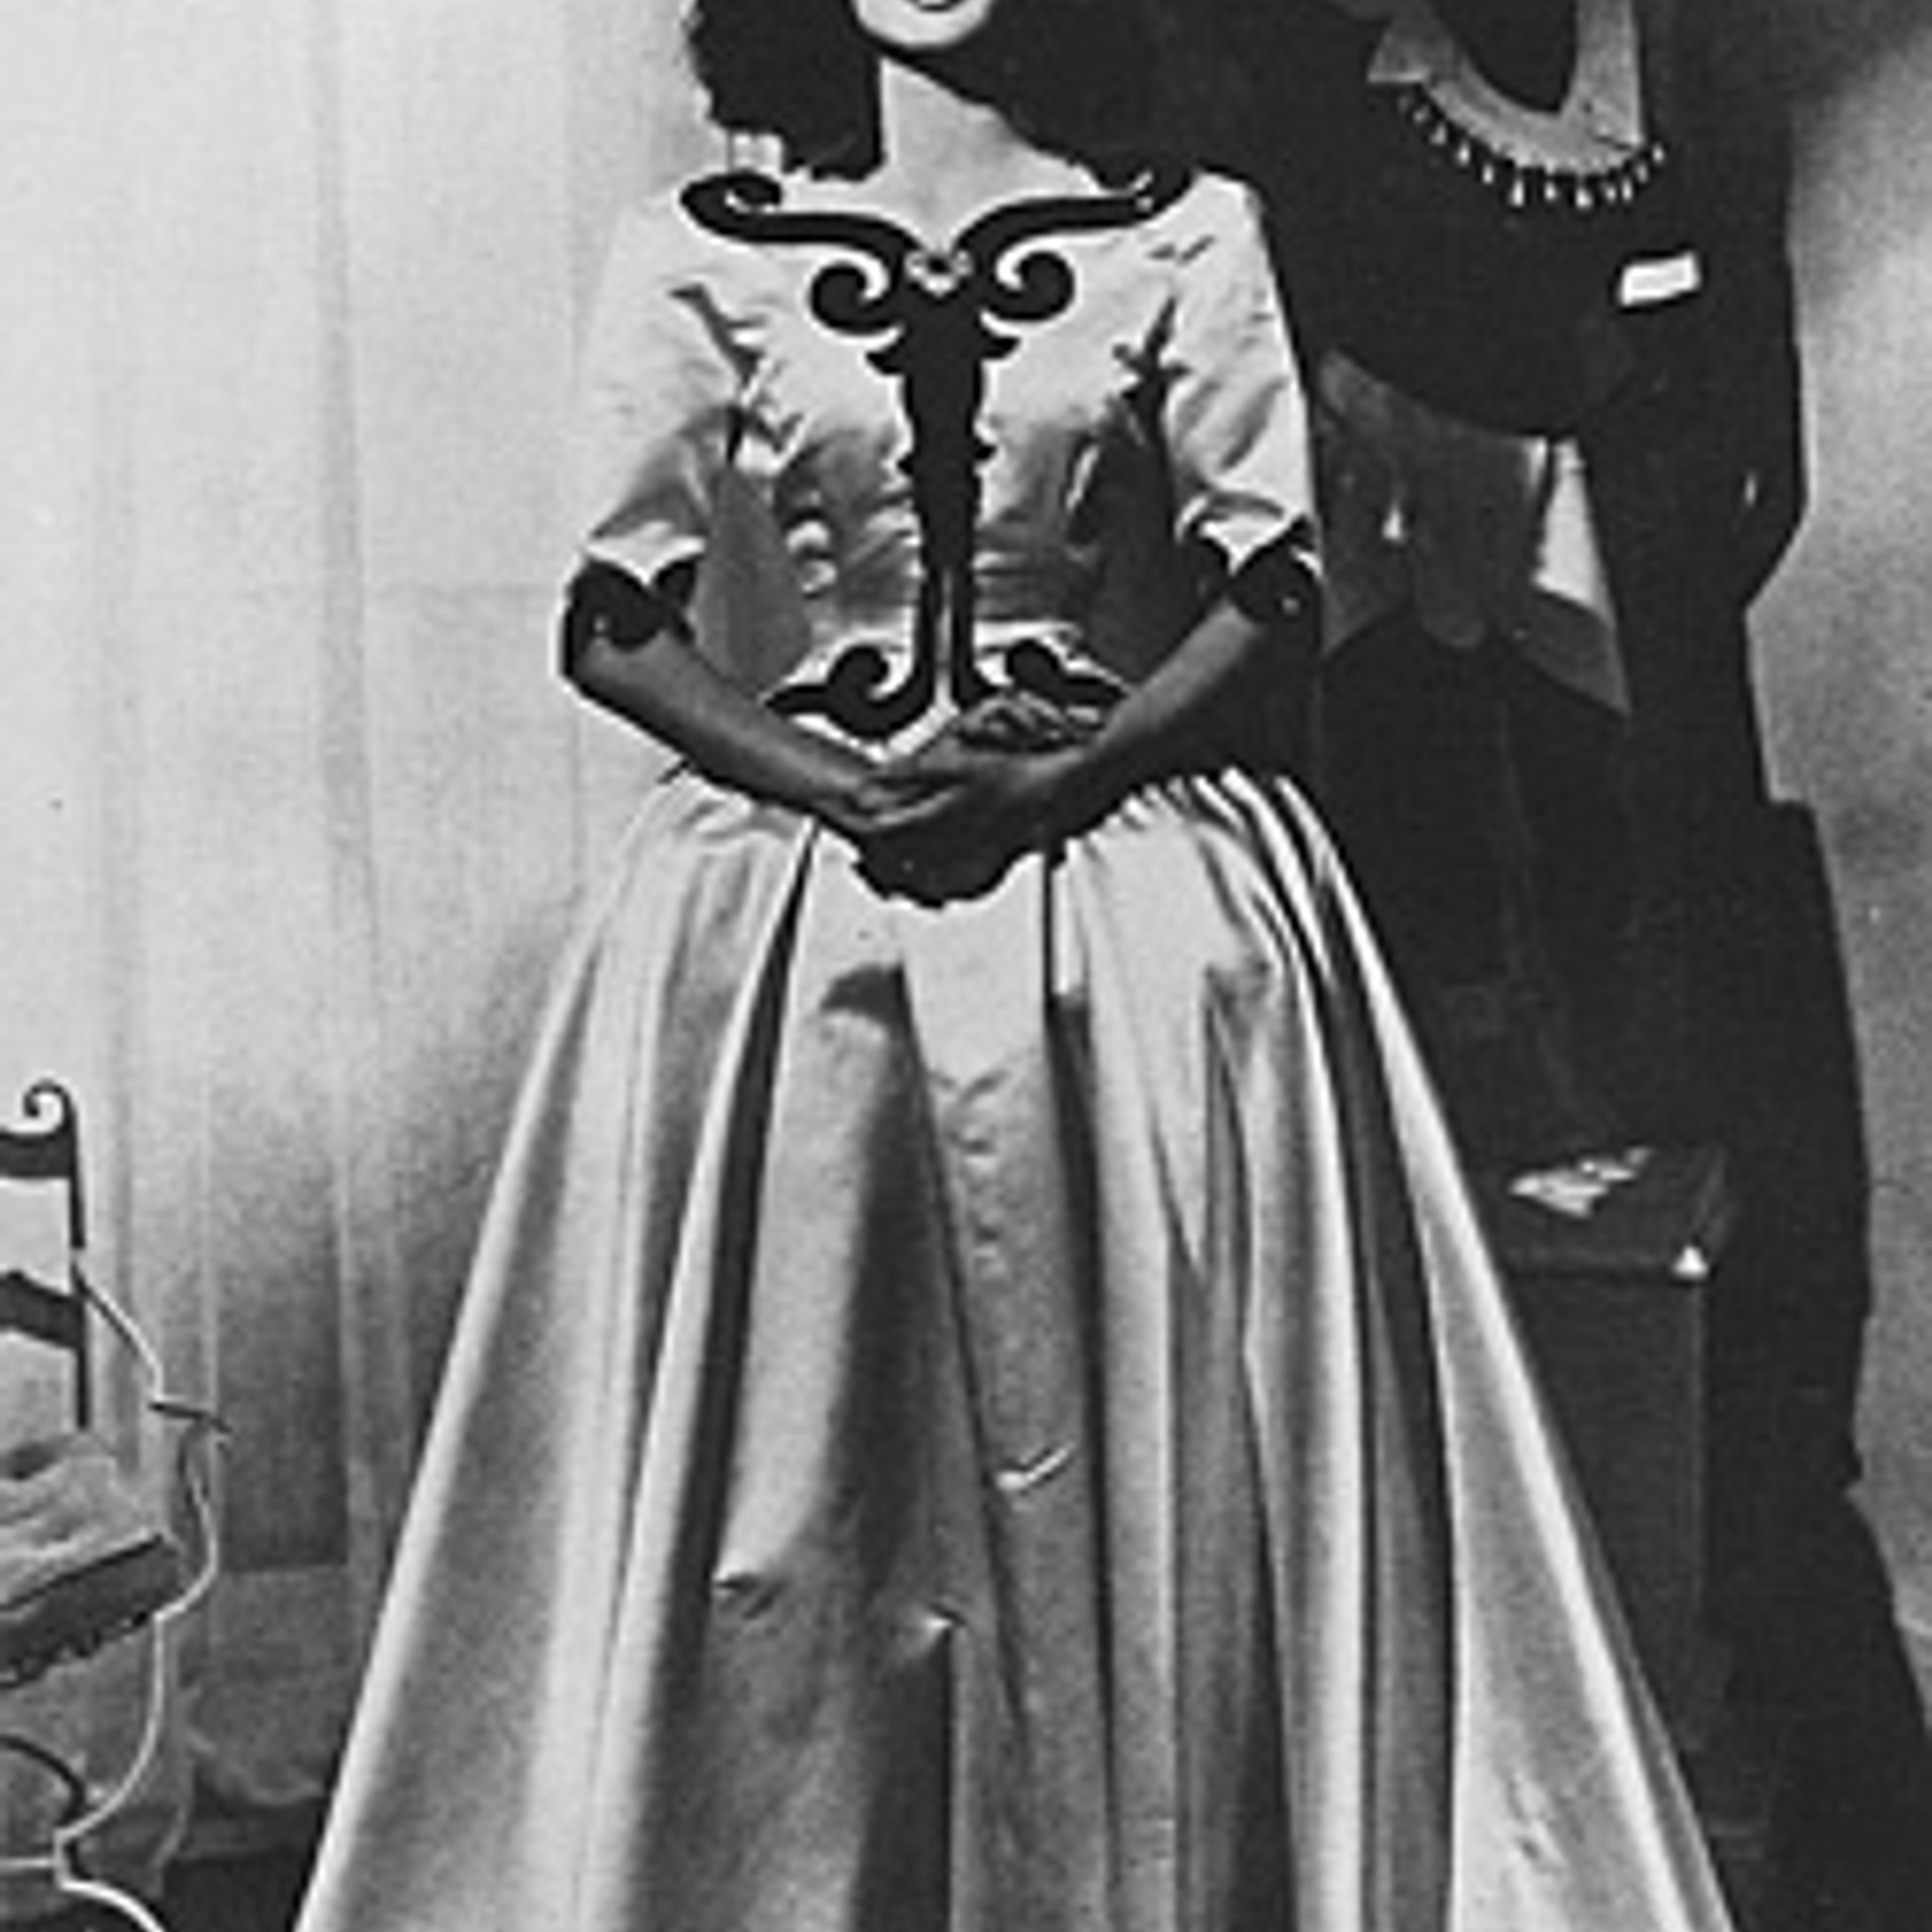 Фото 2. Платье "Инфанта", атлас цвета слоновой кости и черный бархат. 1939 г.